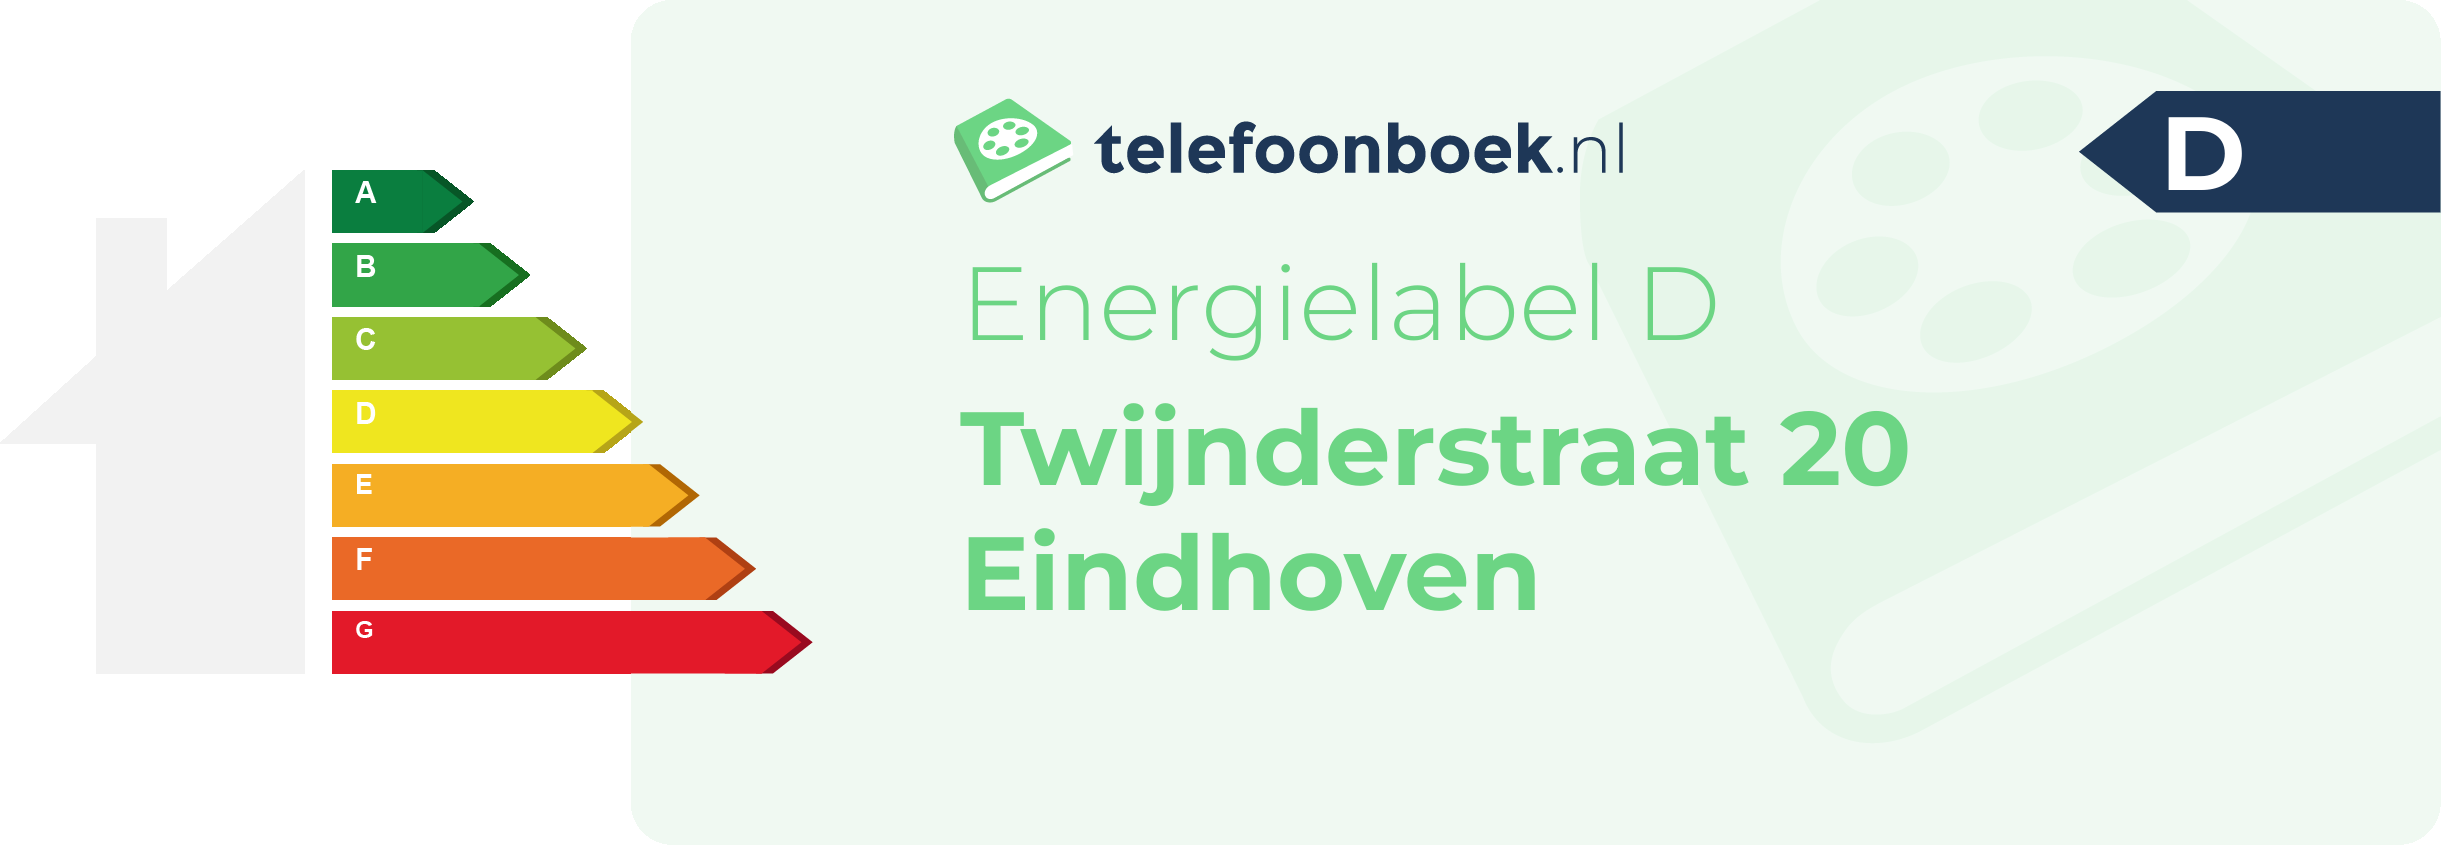 Energielabel Twijnderstraat 20 Eindhoven